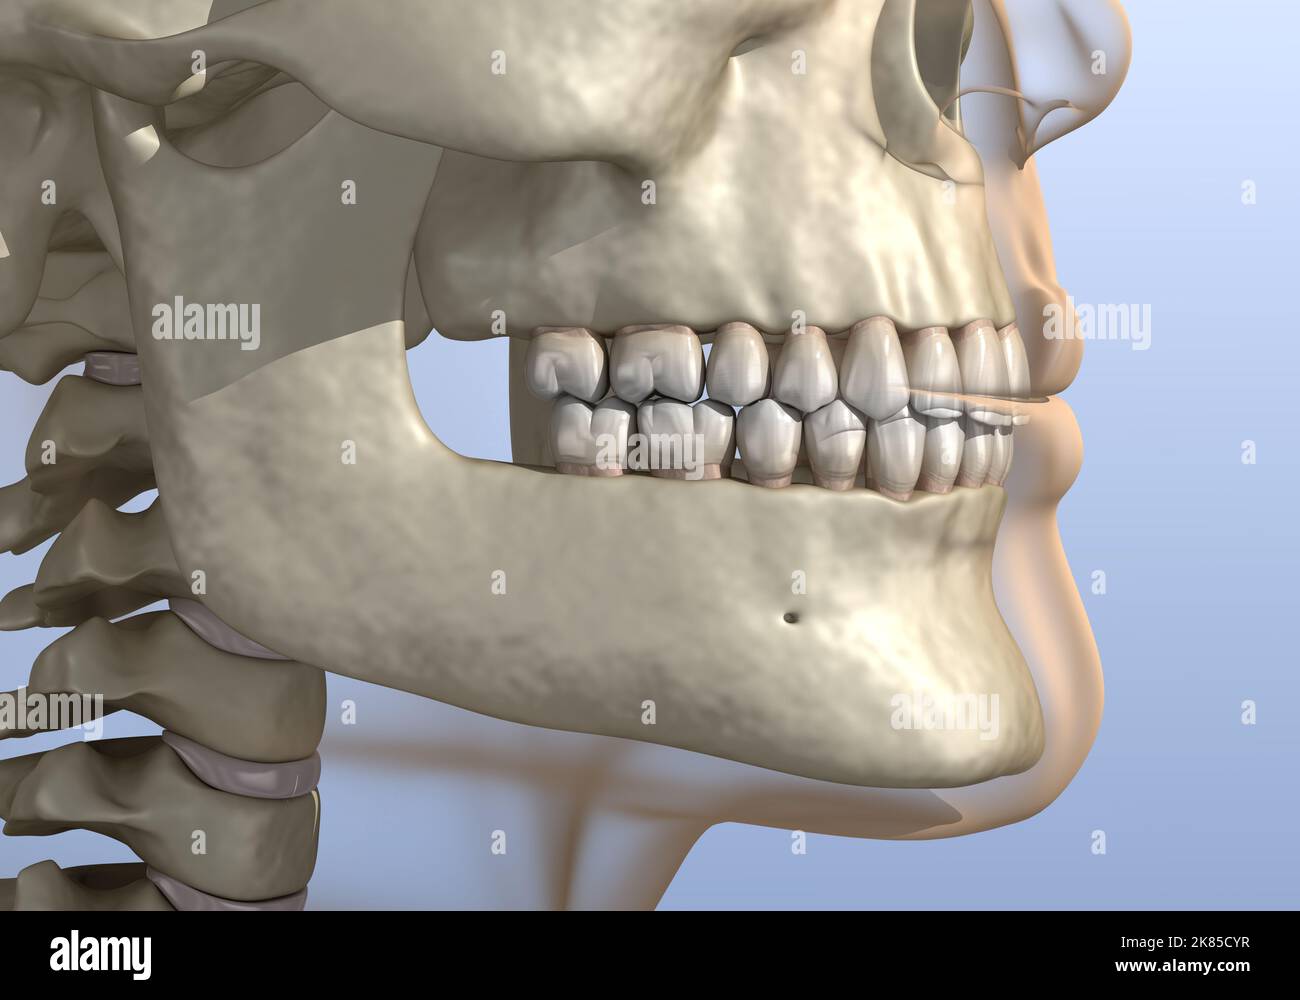 Mento troppo grande o troppo prominente, cranio umano. Illustrazione 3D accurata dal punto di vista medico Foto Stock